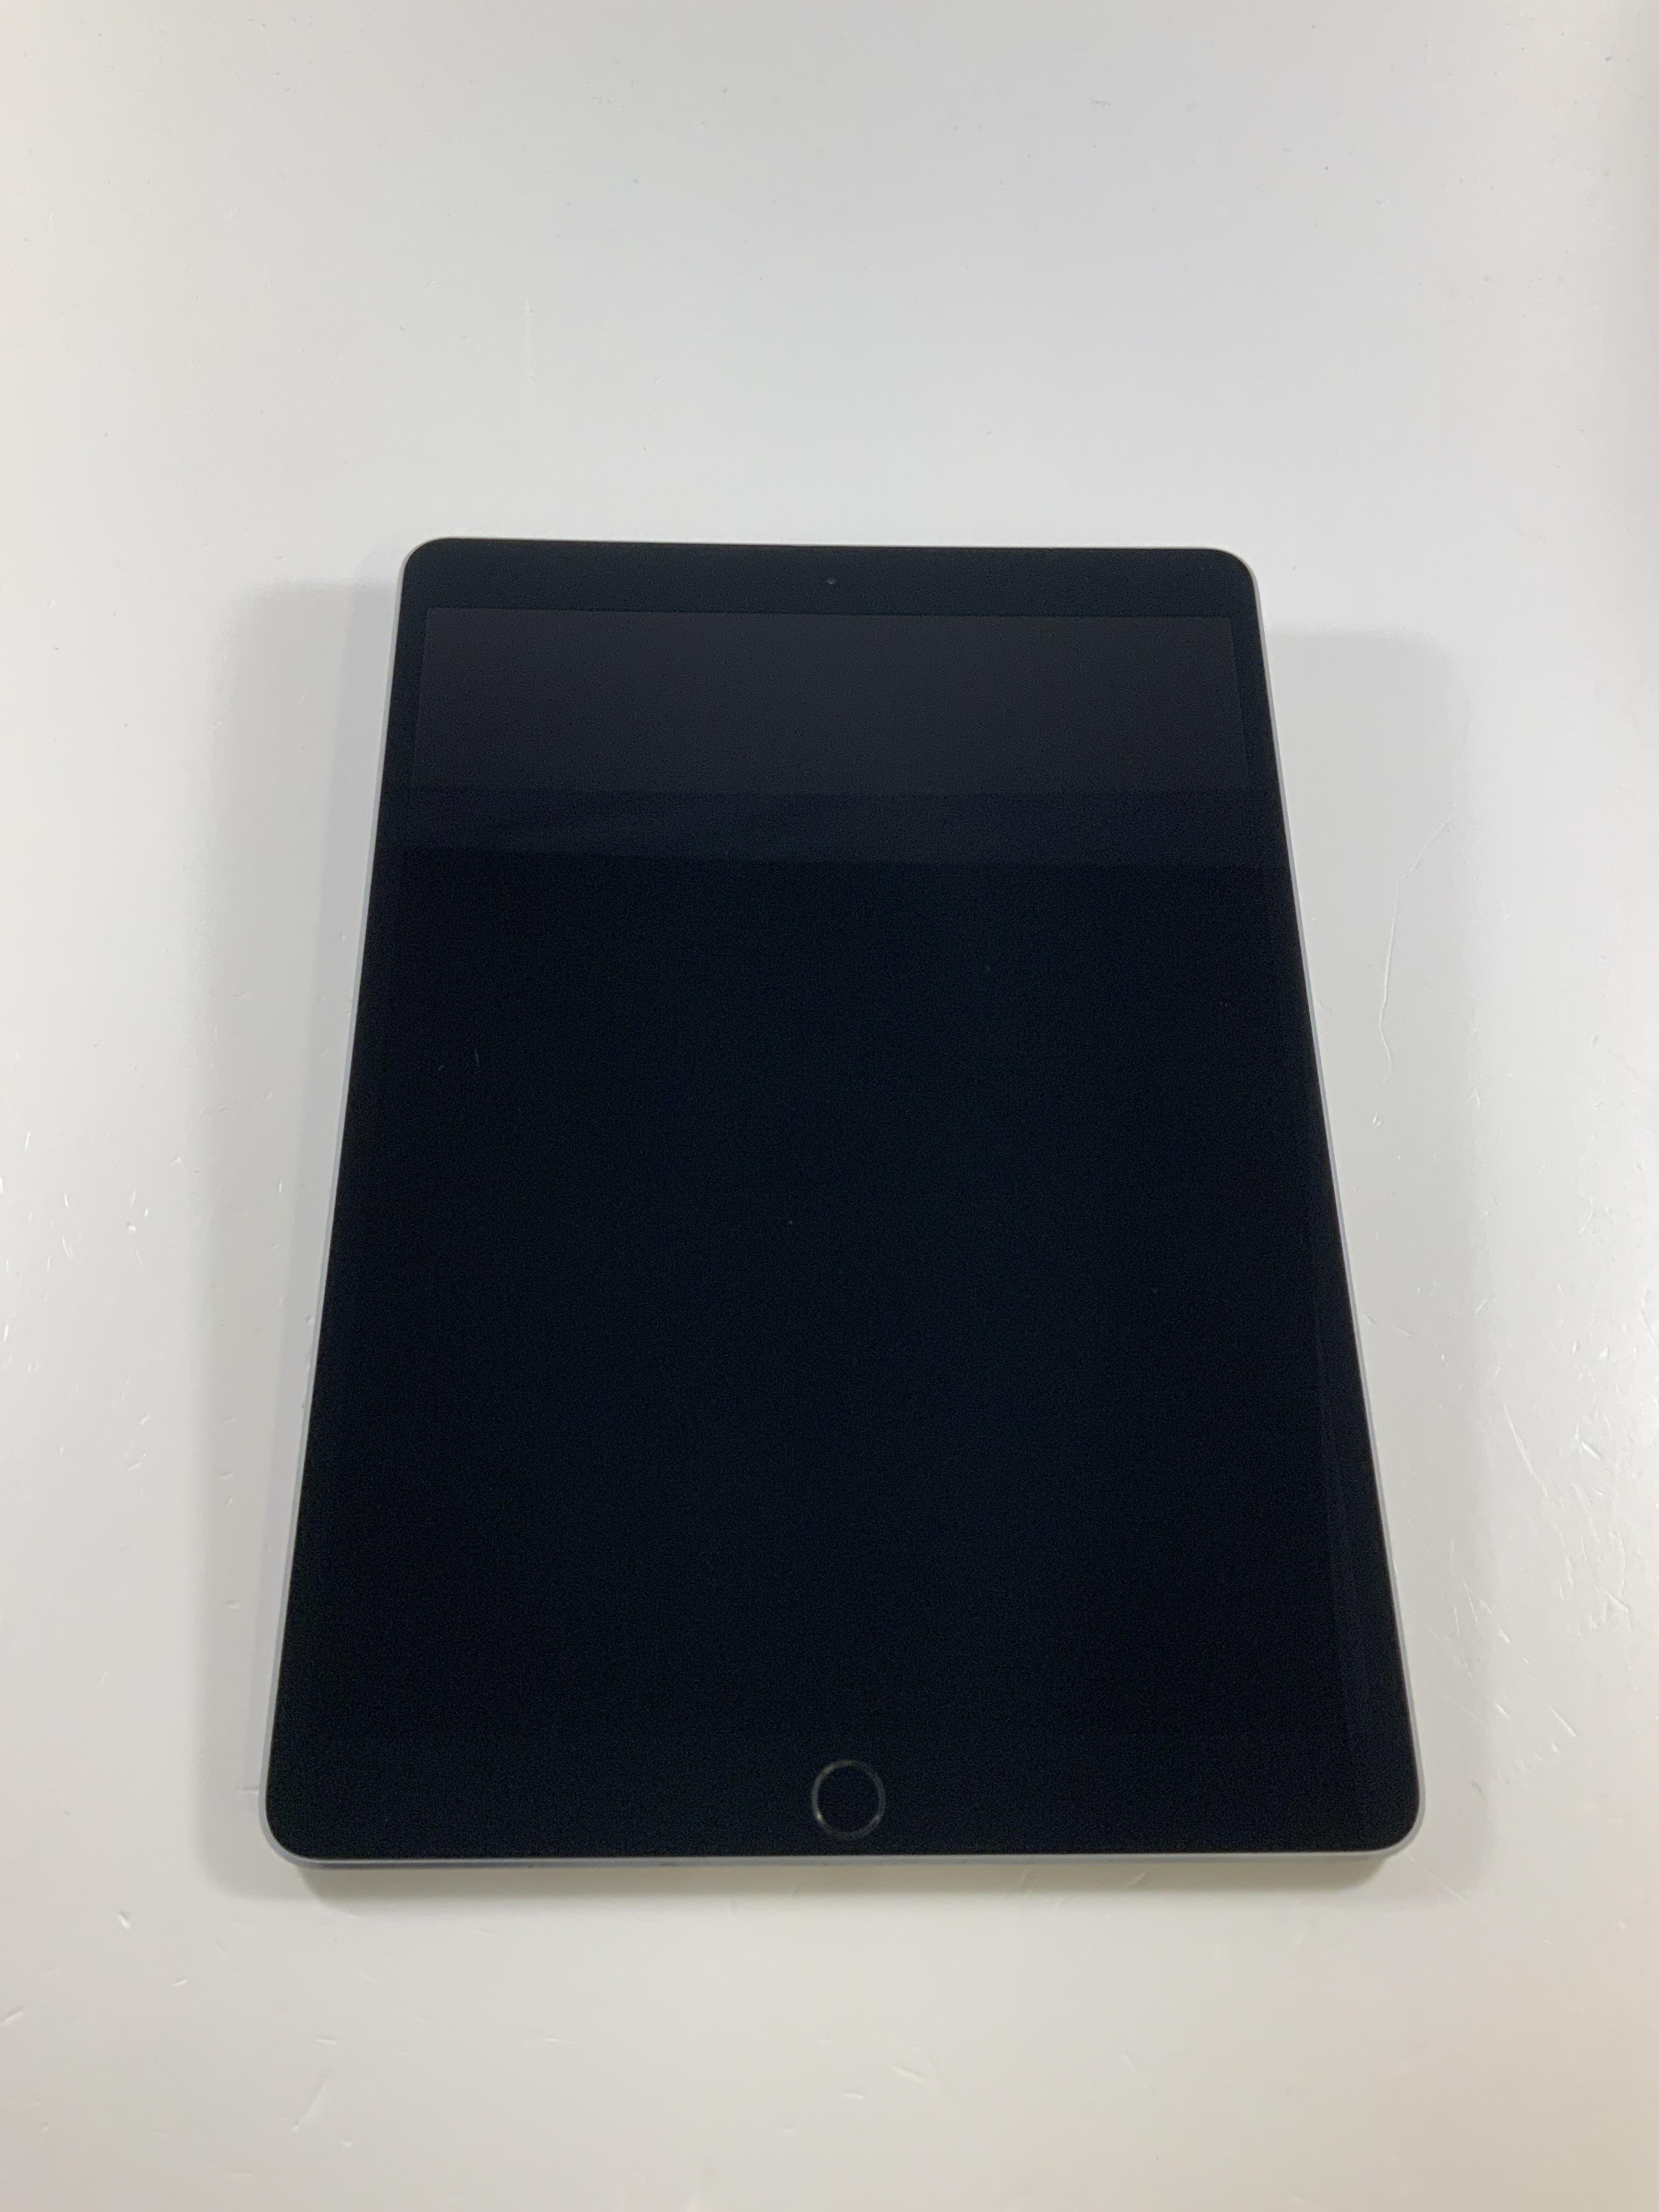 iPad Pro 10.5" Wi-Fi + Cellular 64GB, 64GB, Space Gray, obraz 1